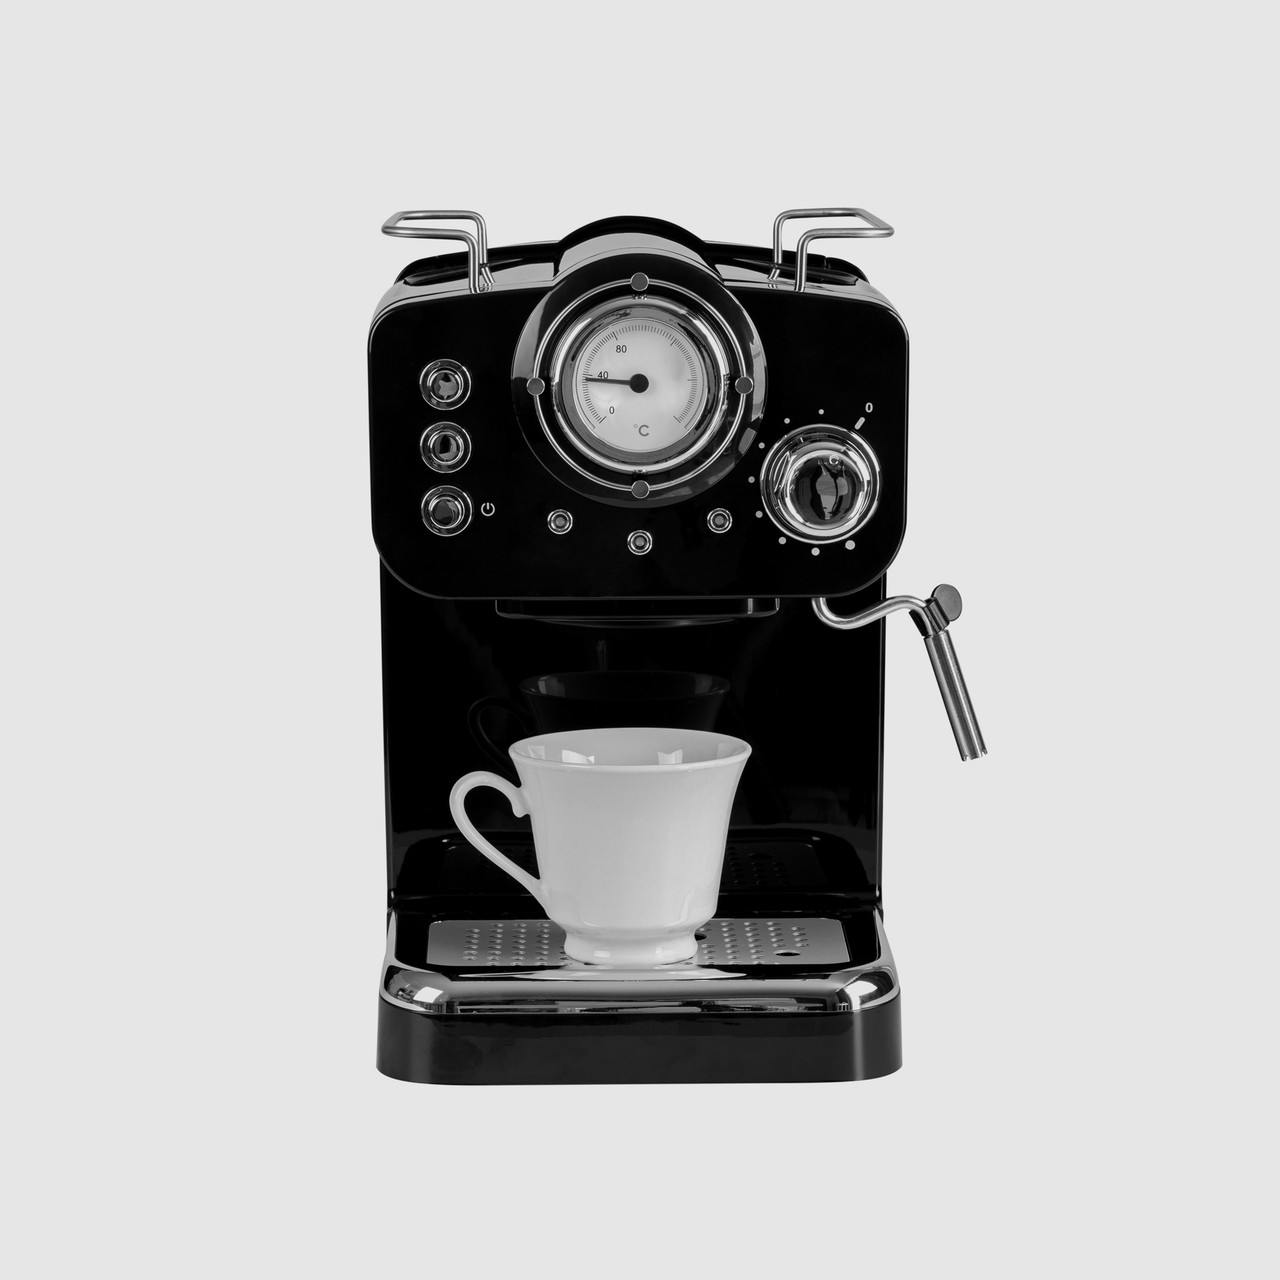 Royale iQ Espresso Machine